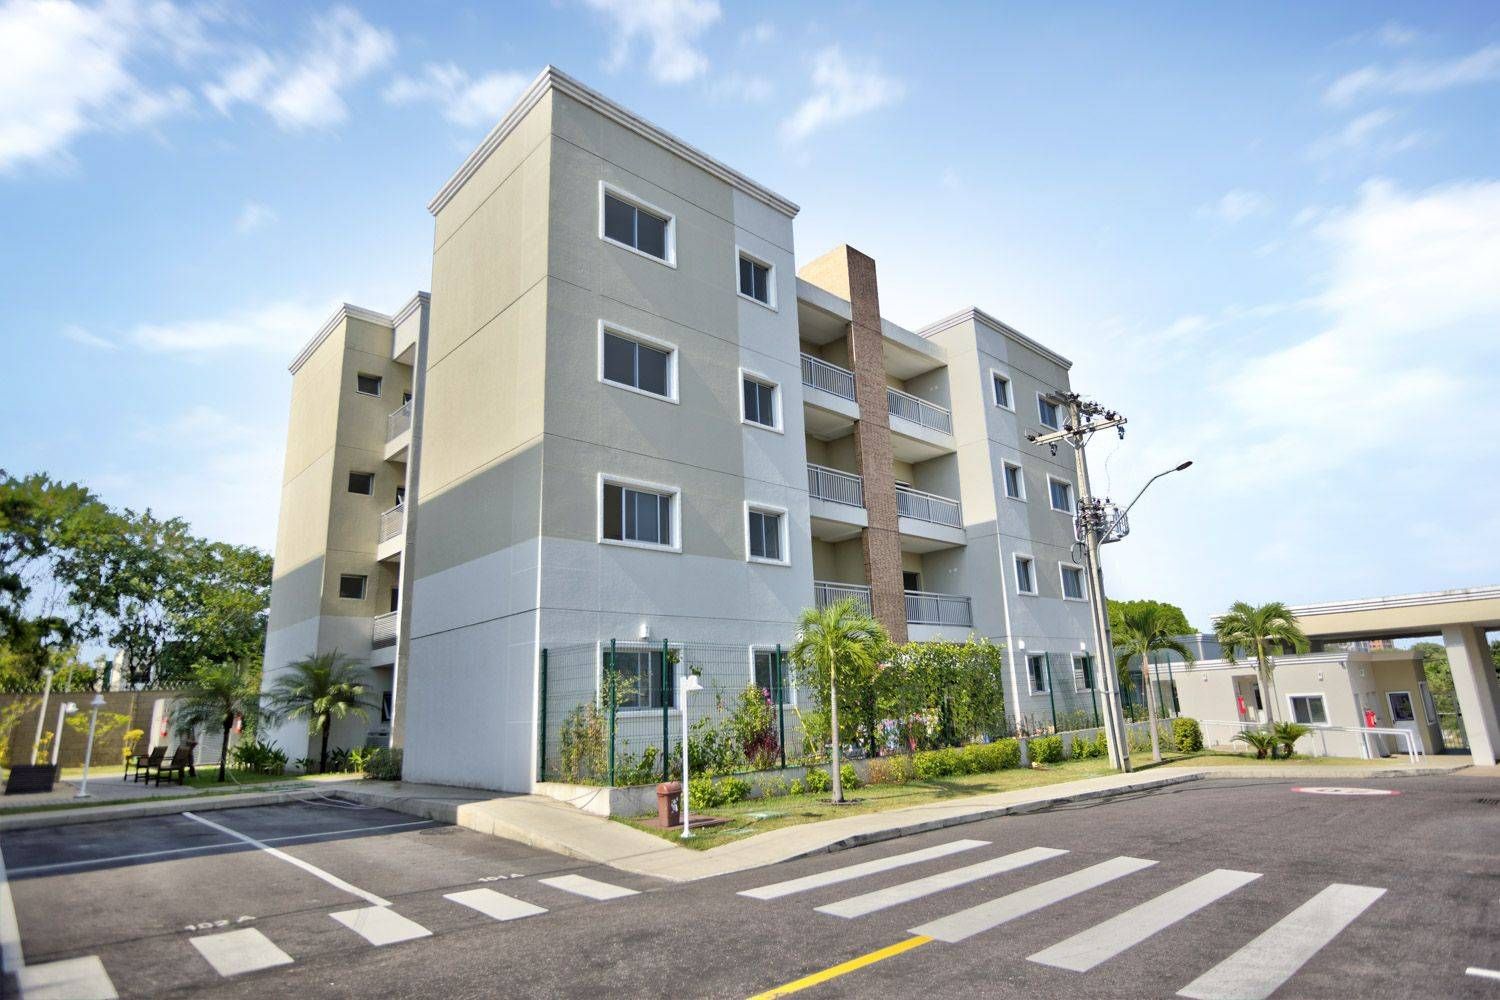 Apartamento com 3 dormitórios à venda, 80 m² por RS 480.000 - Flores - Manaus-AM